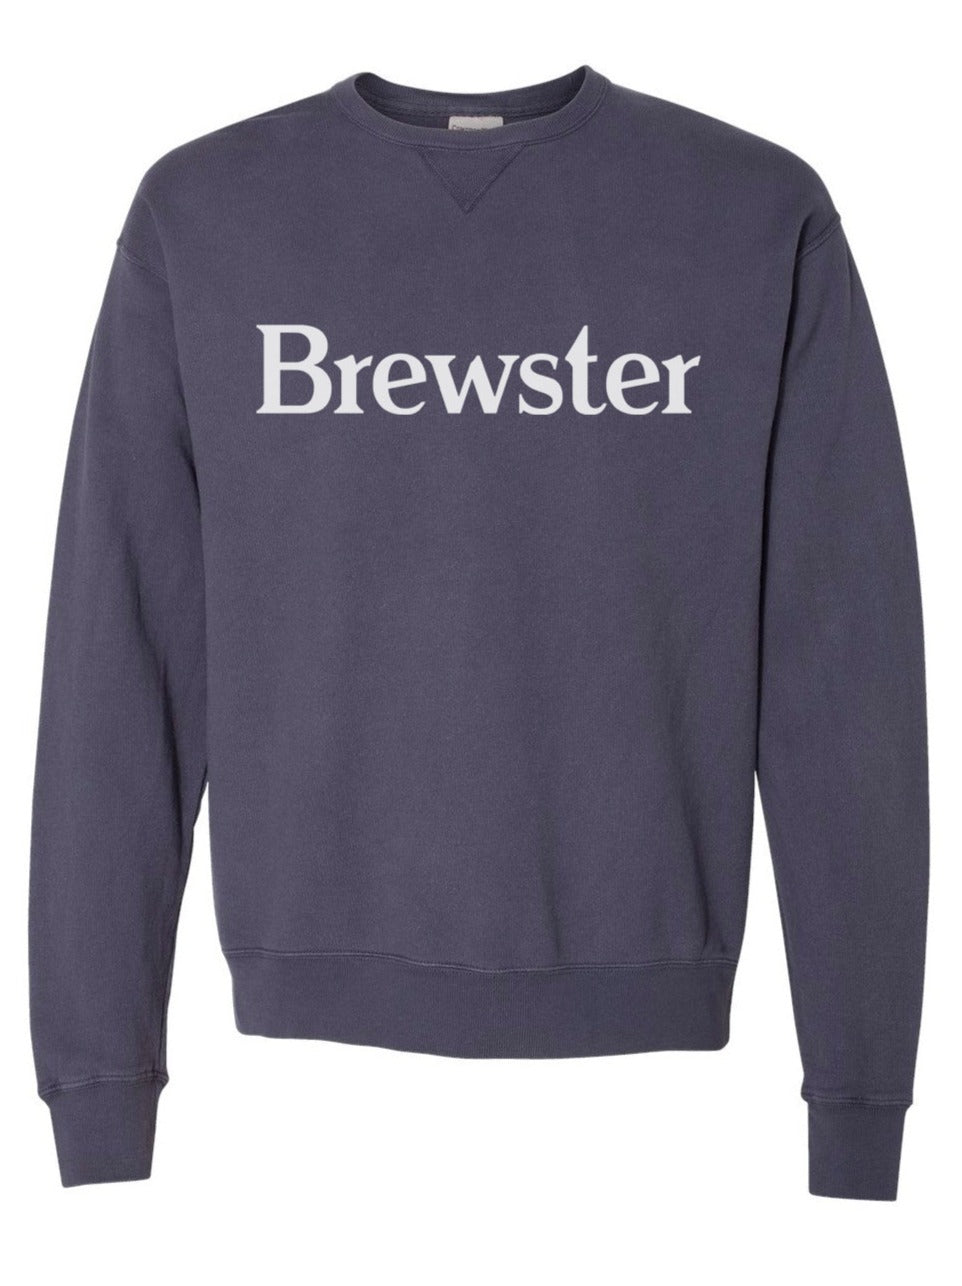 Brewster Crew Sweatshirt